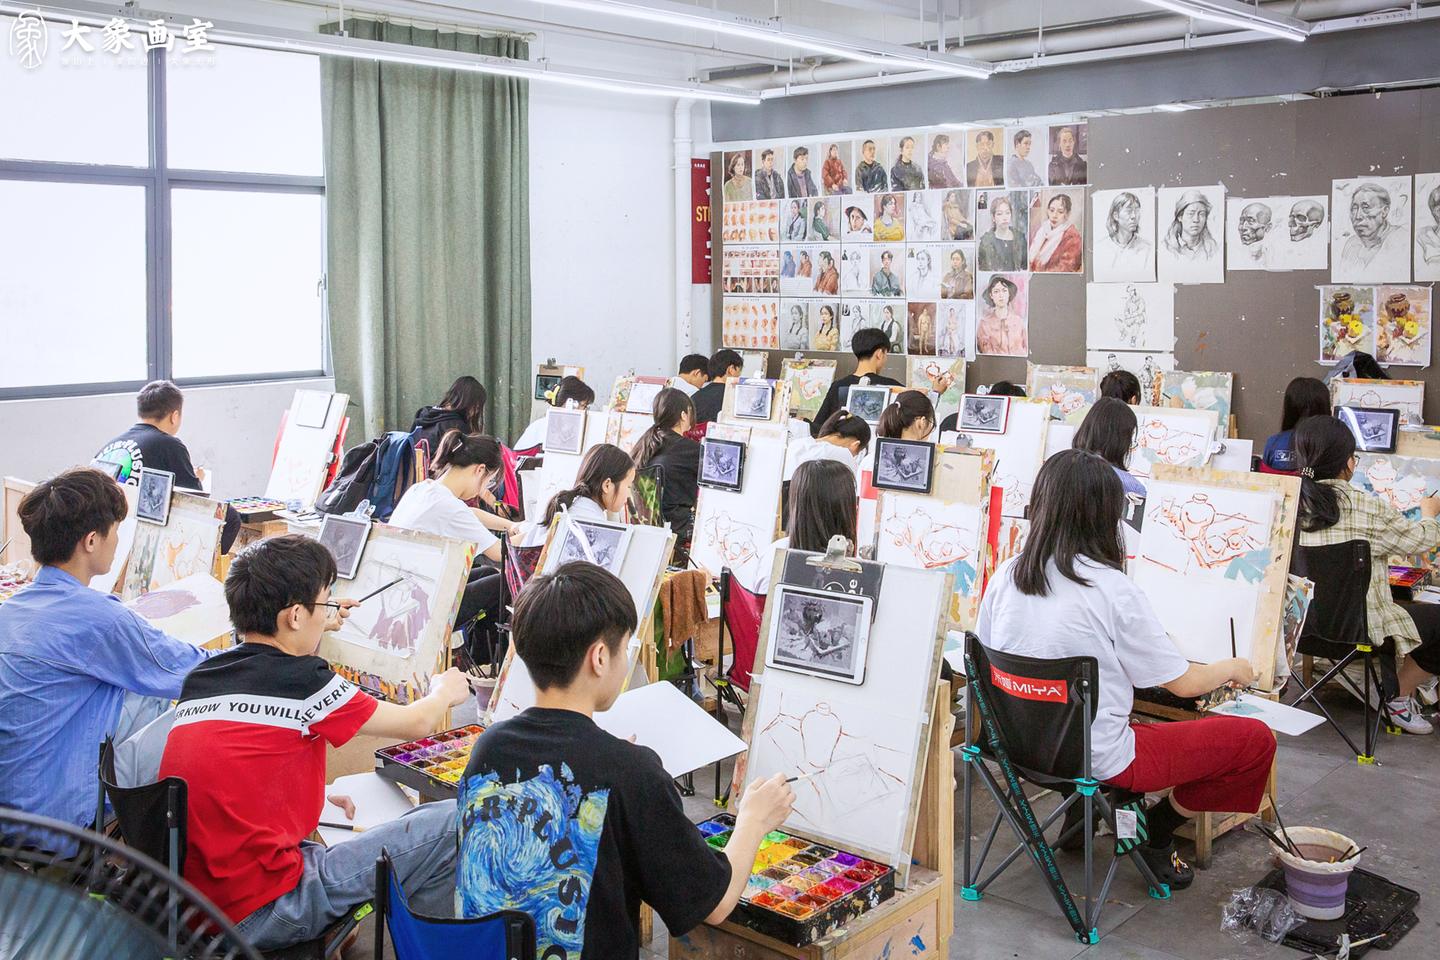 北京艺启清美画室 | 北京印刷学院校考大捷 - 哔哩哔哩